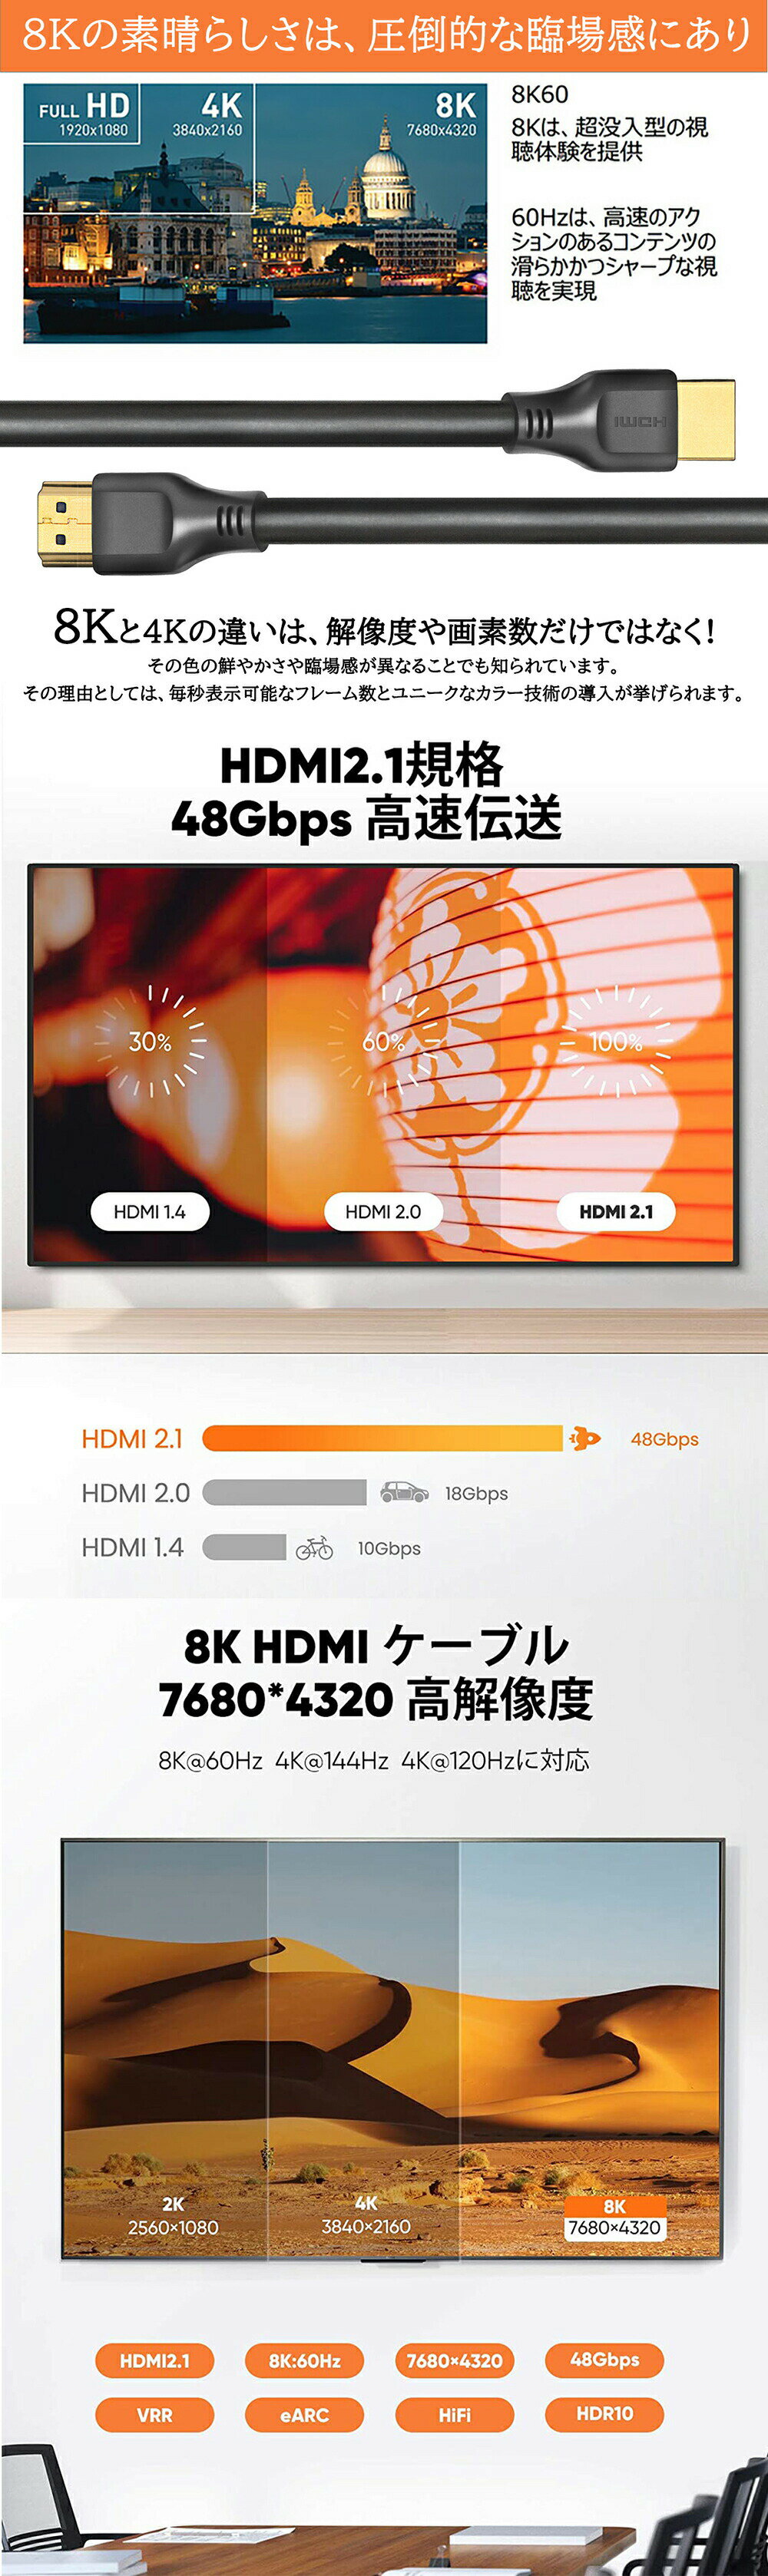 858shop HDMI2.1 ケーブル 1m HDMIケーブル